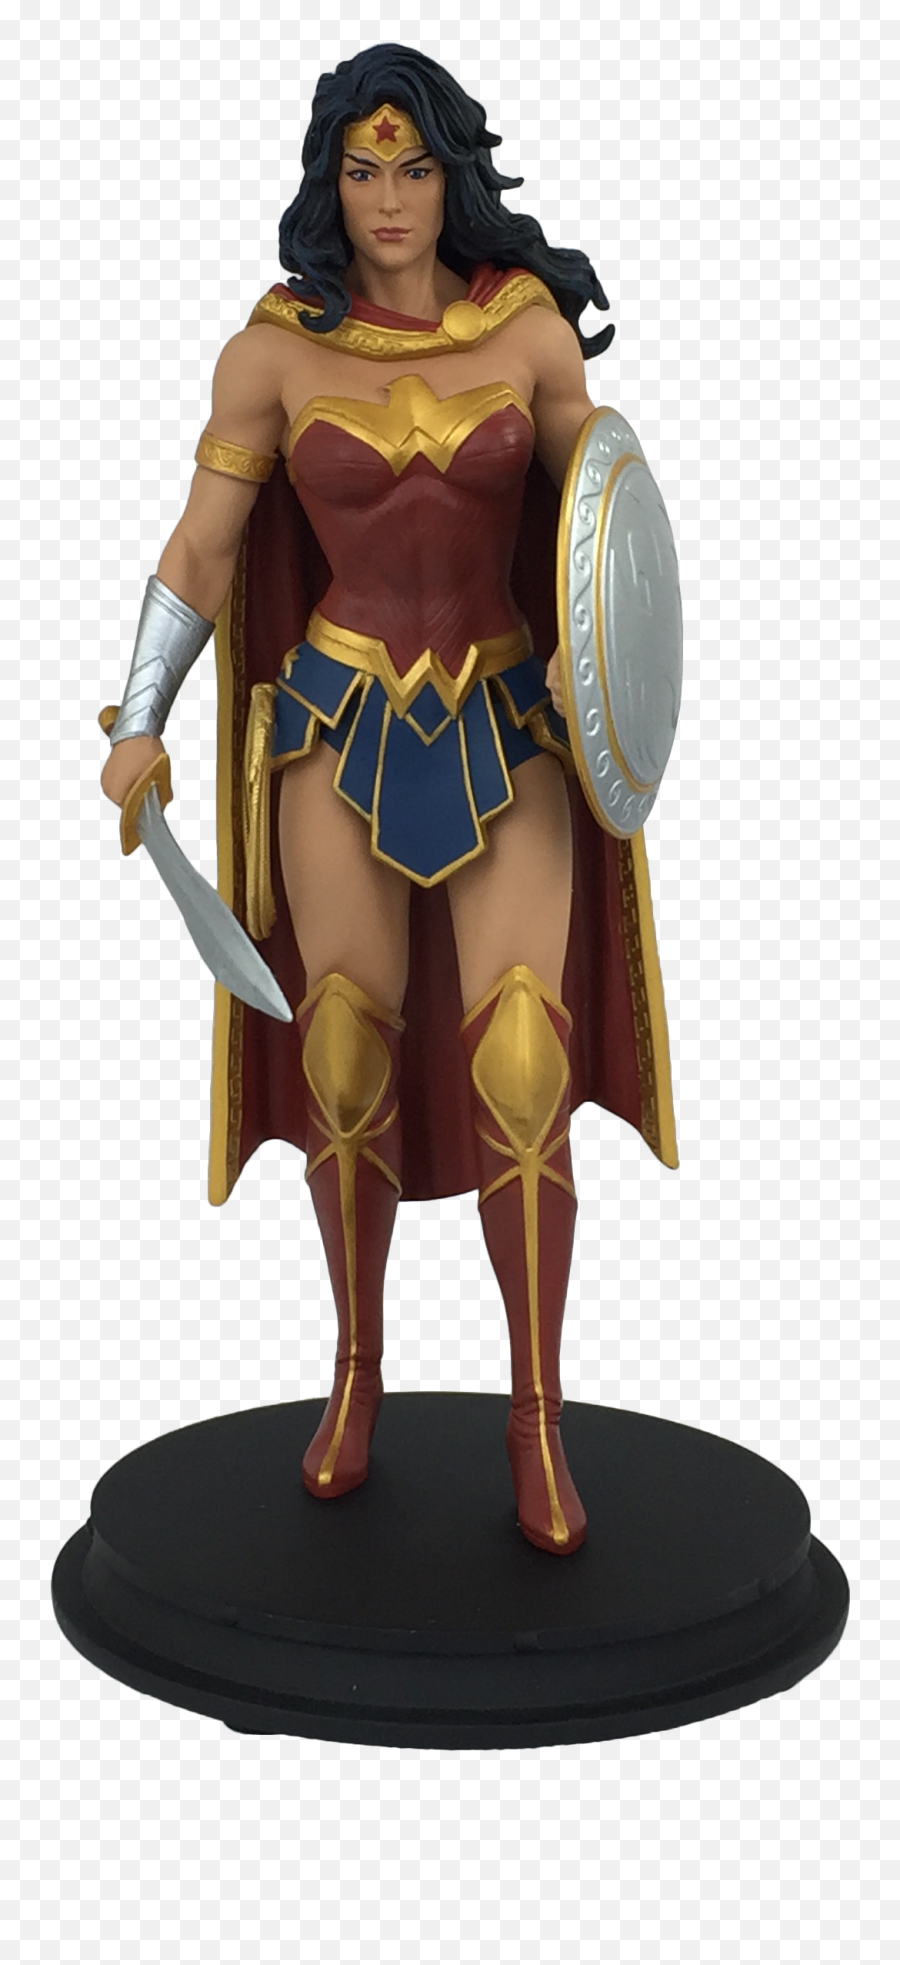 Dc Rebirth Wonder Woman Statue Only - Wonder Woman Rebirth Statue Png,Wonder Woman Transparent